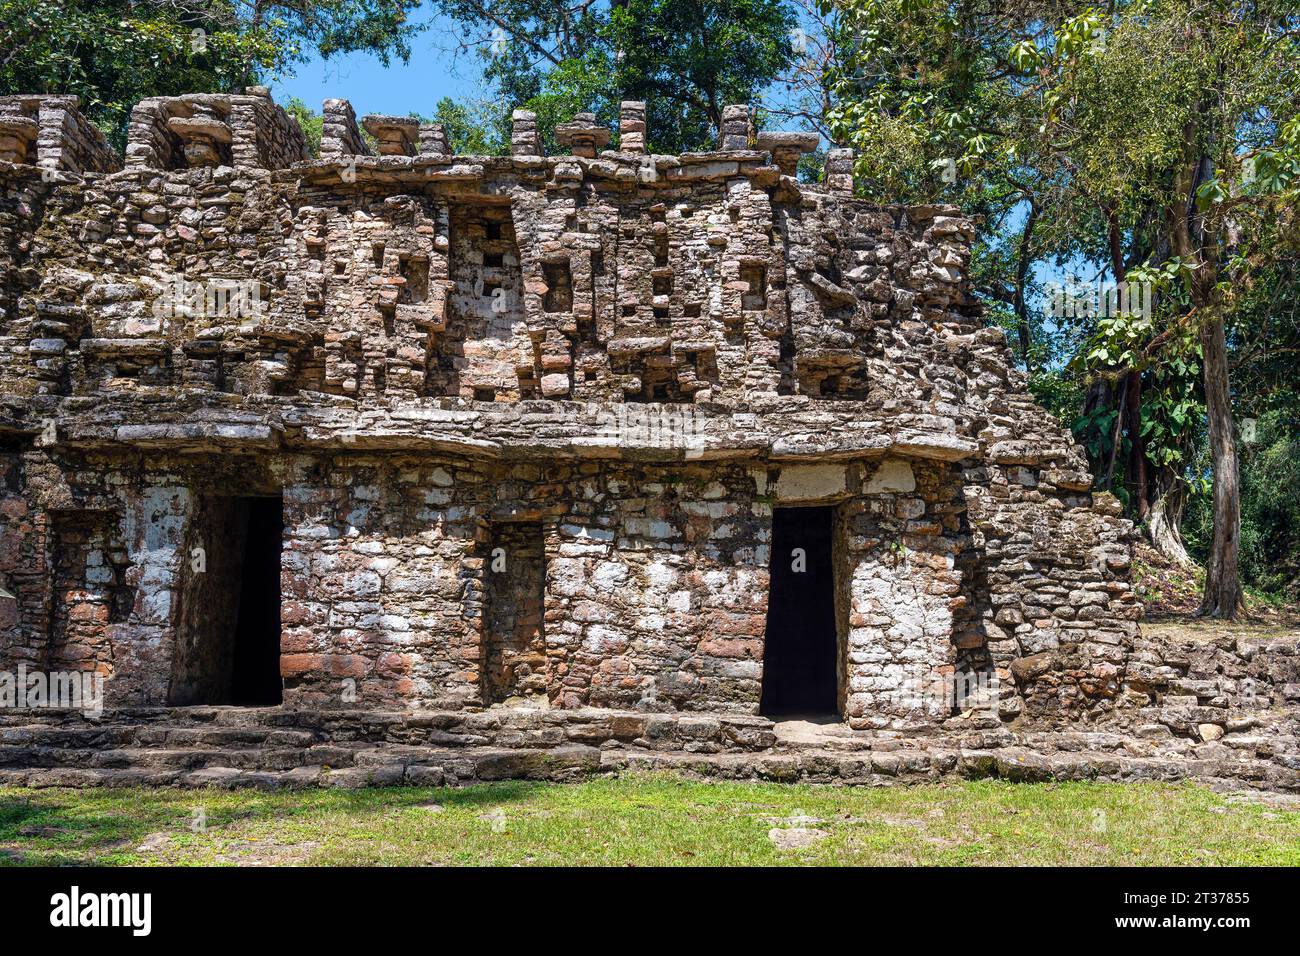 Maya-Ruinenkomplex von Yaxchilan mit Nahaufnahme einer Struktur, die als Labyrinth oder Struktur 19 bekannt ist und sich im tropischen Regenwald in Chiapas, Mexiko befindet. Stockfoto